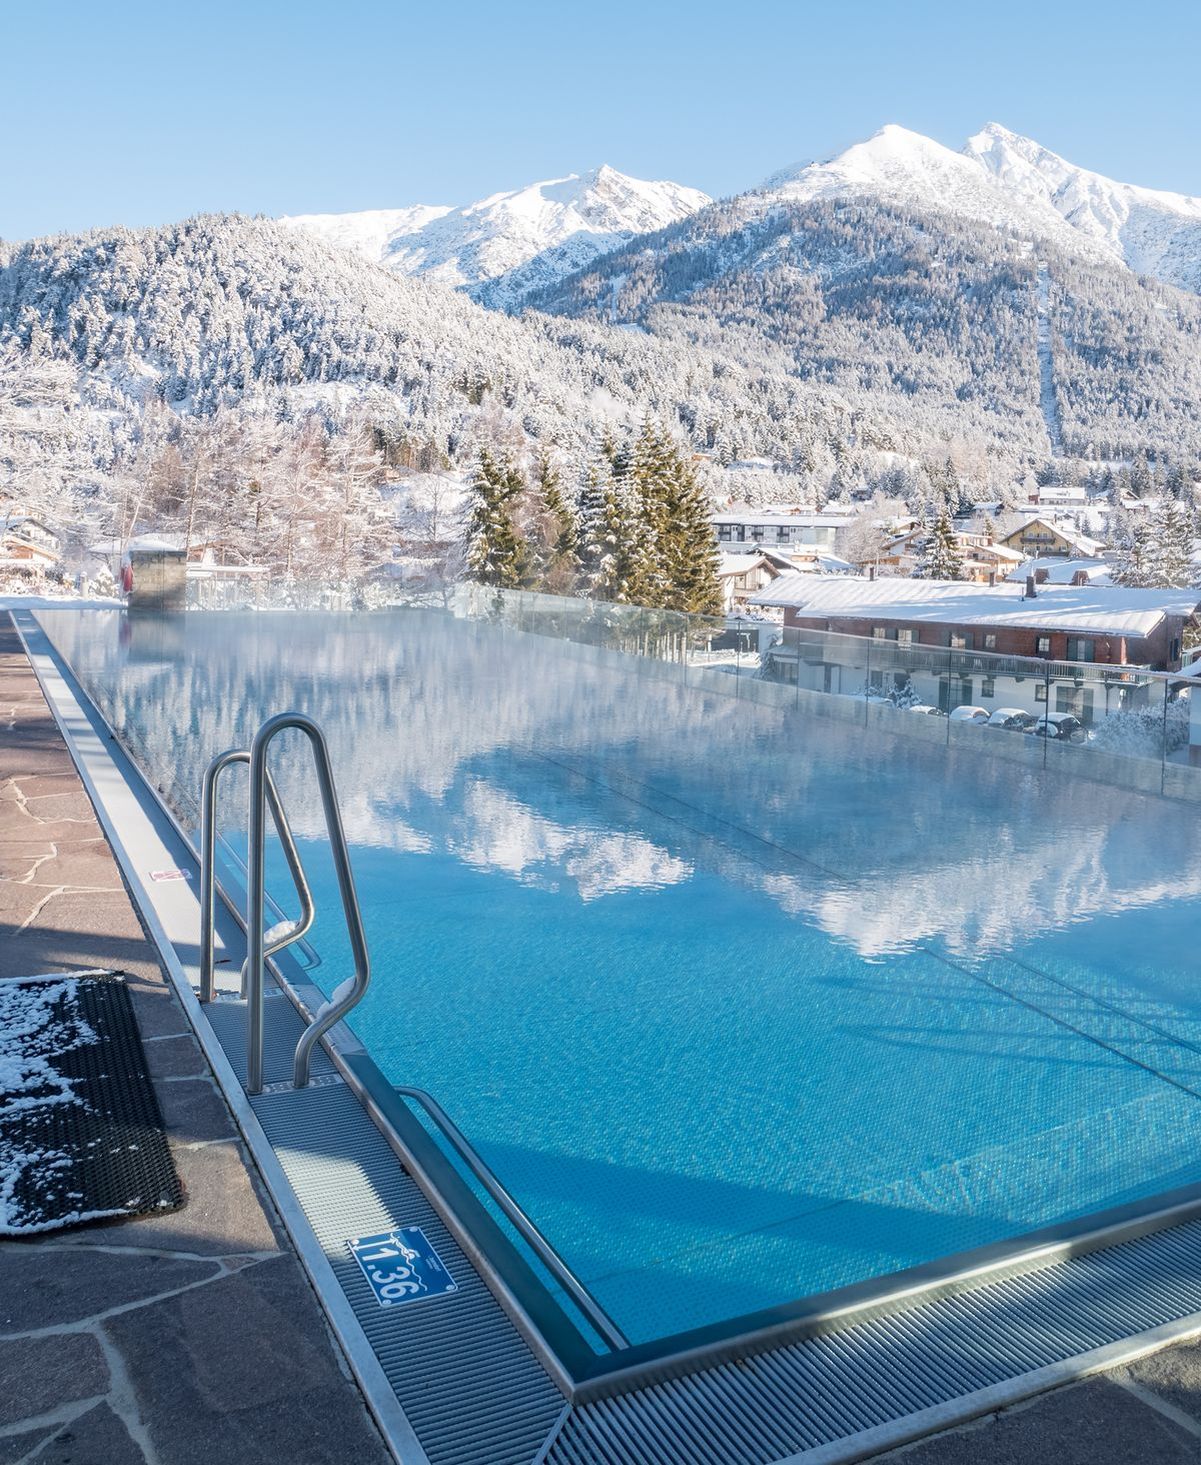 Foto: Das Alpin Resort Sacher Seefeld-Tirol gehört jetzt zu den besten Hotels der Welt.